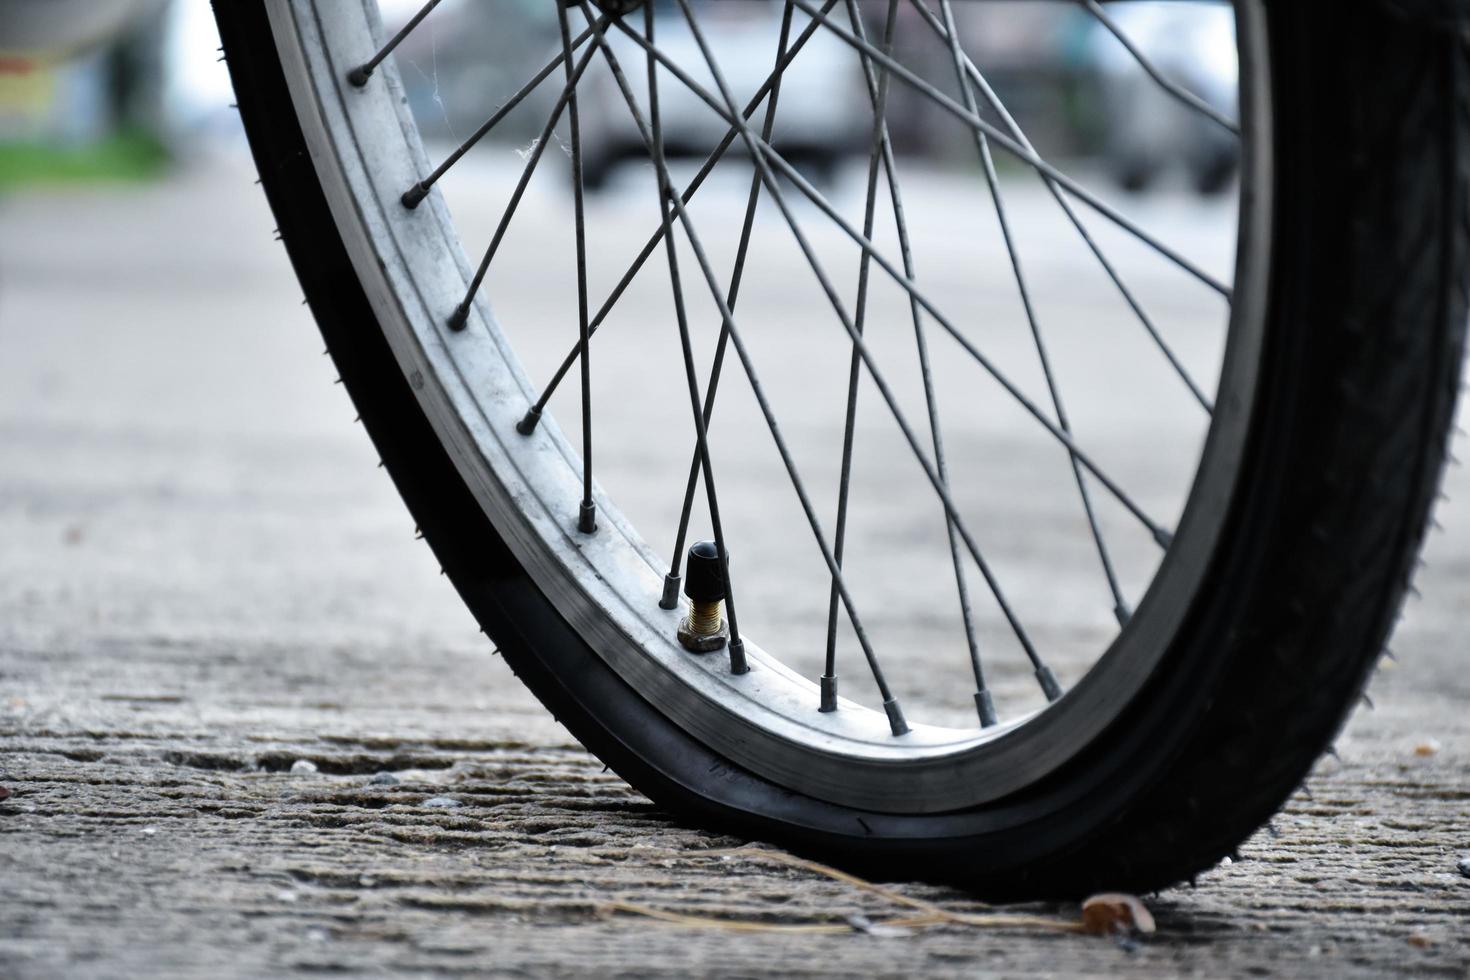 visão aproximada da roda furada da bicicleta ou do pneu furado da bicicleta que estacionou na estrada e esperando para consertar. foto